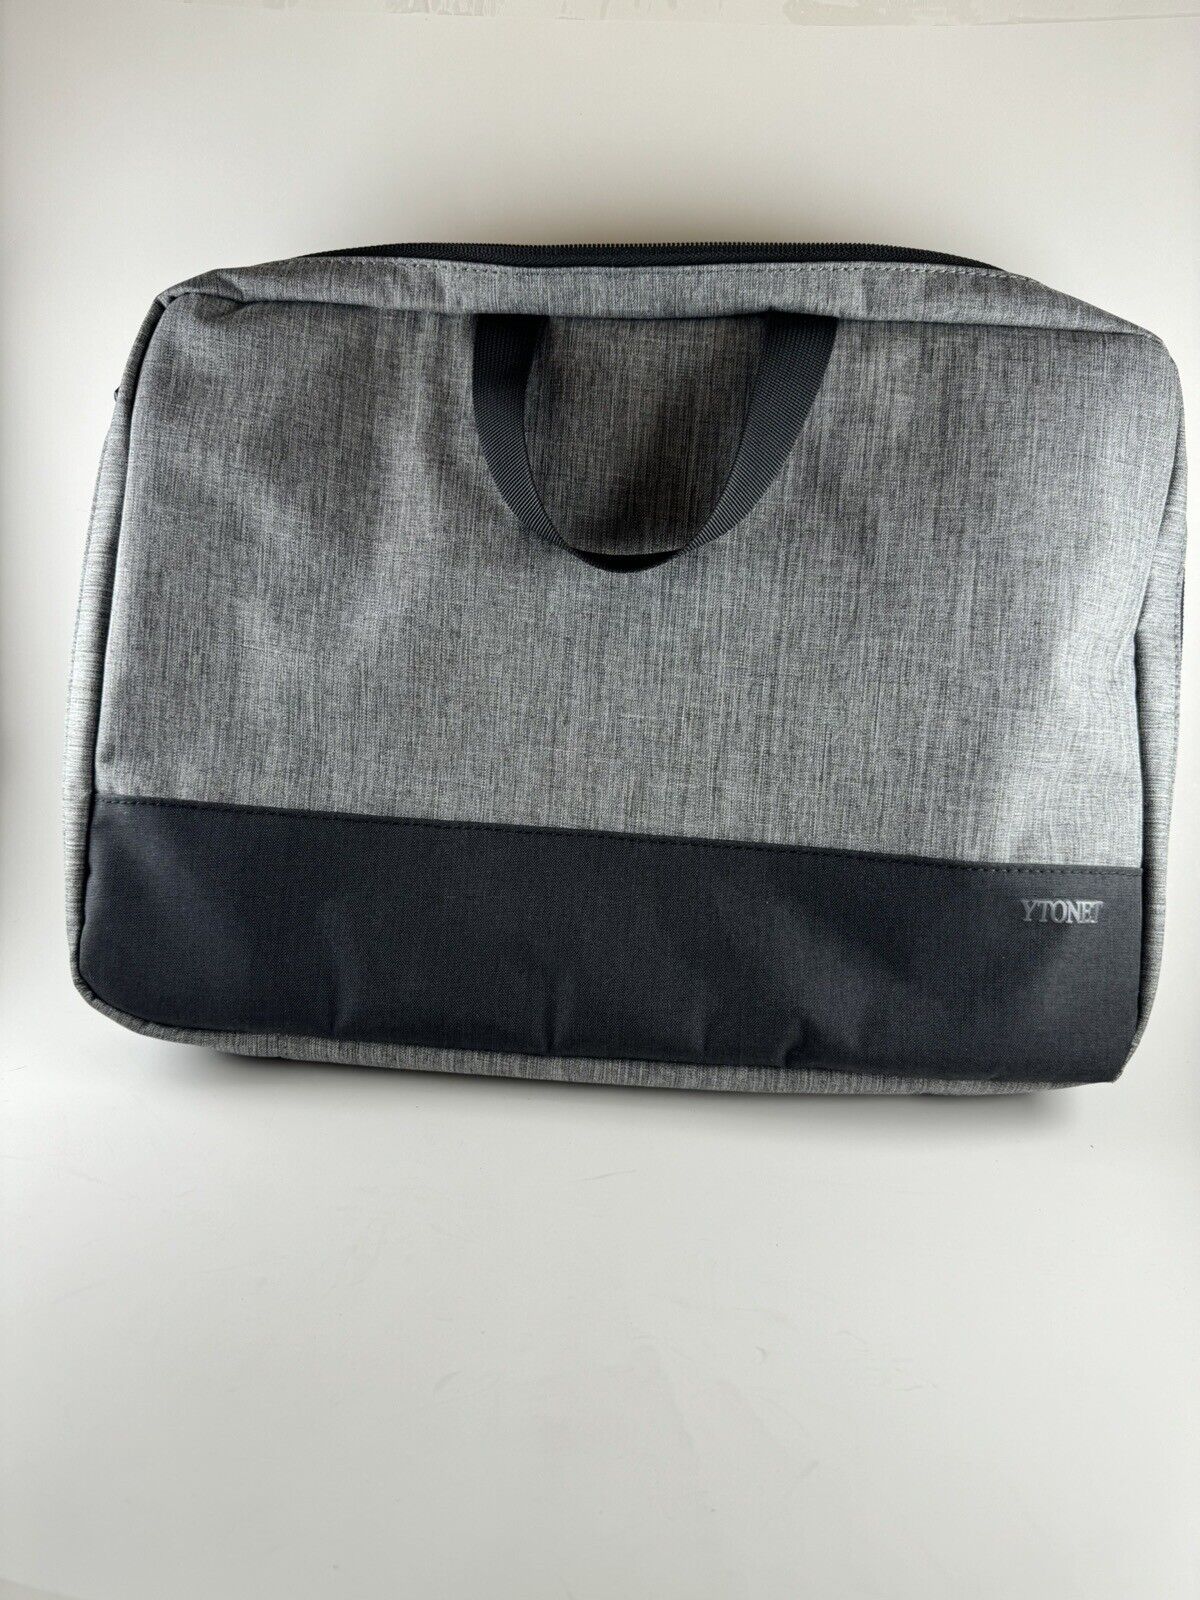 Ytonet Laptop Case 15 inch Sleeve Bag Brief Case Shoulder Strap